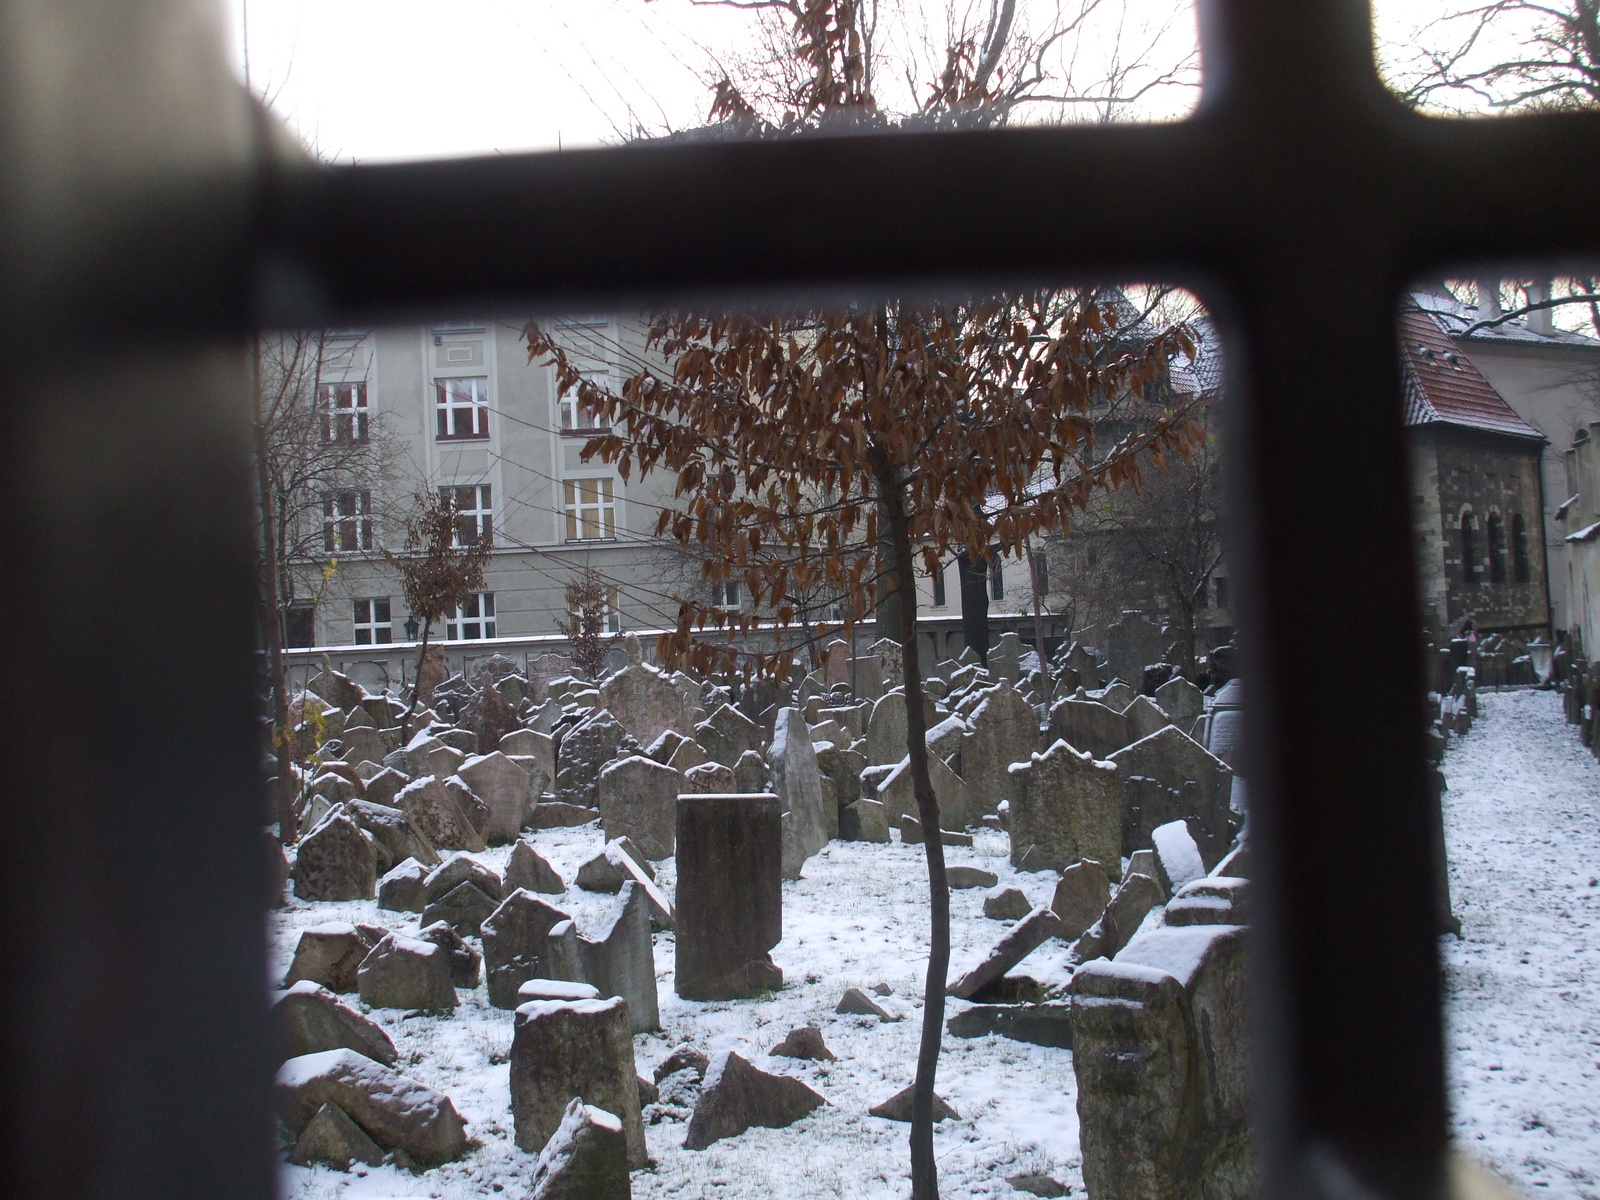 Belátás a régi zsidó temetőbe